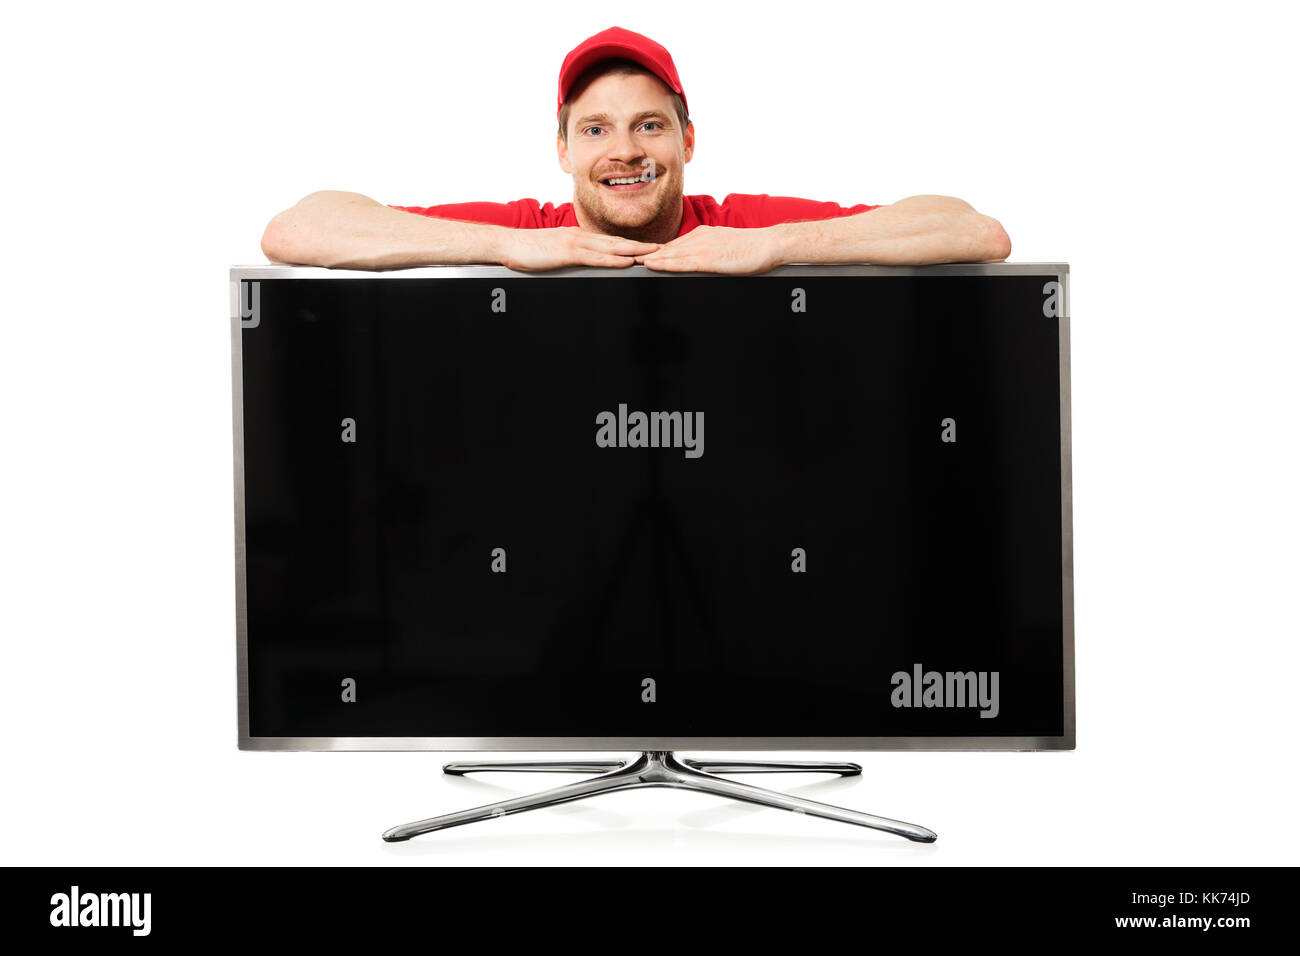 Smiling salesman en rouge uniforme sur grand écran plat blanc isolé sur fond blanc Banque D'Images